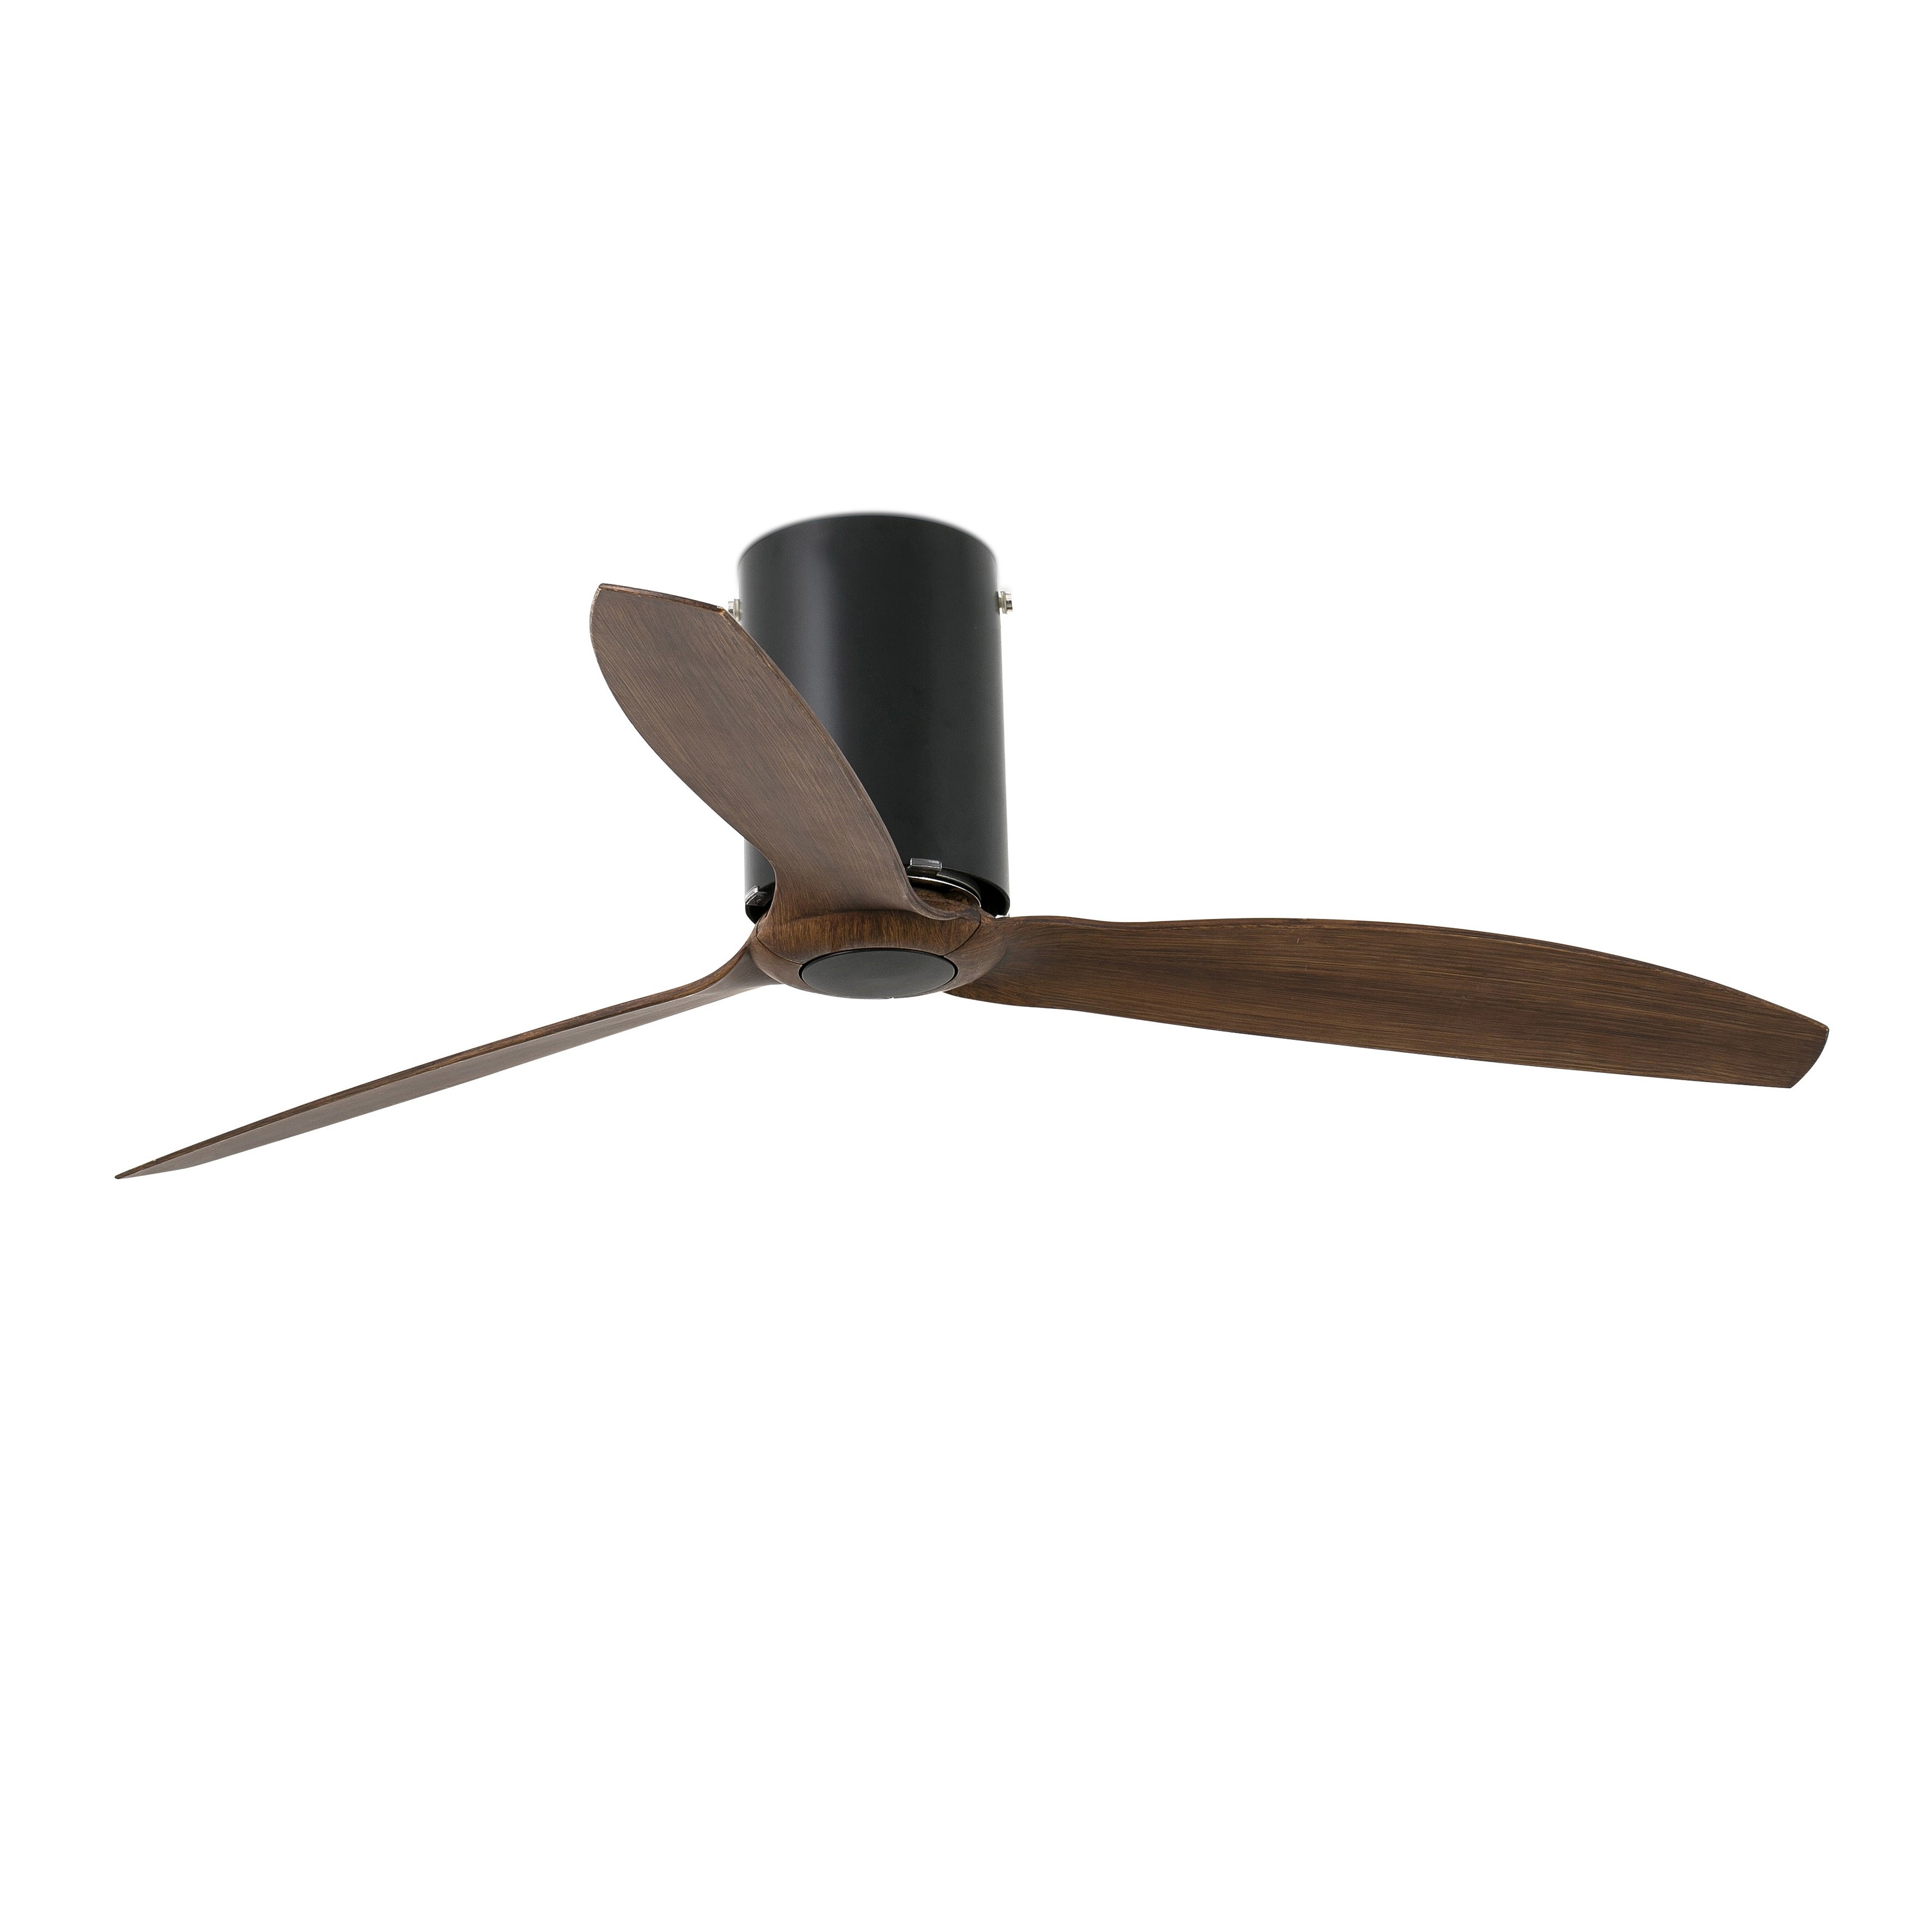 Faro Матово-черный потолочный вентилятор Mini Tube Fan